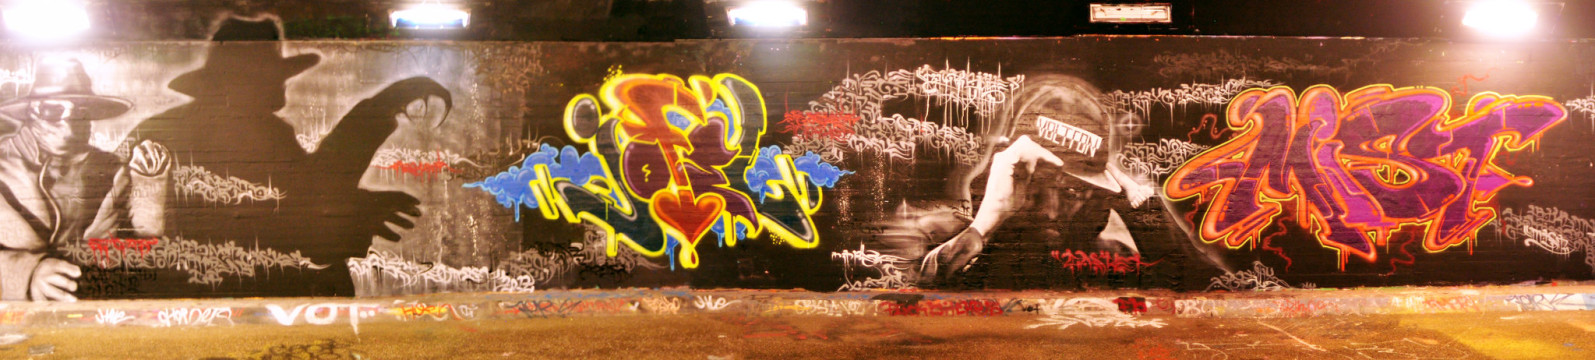 Cas, Jofel, Mist - Rotterdam Graffiti 2012